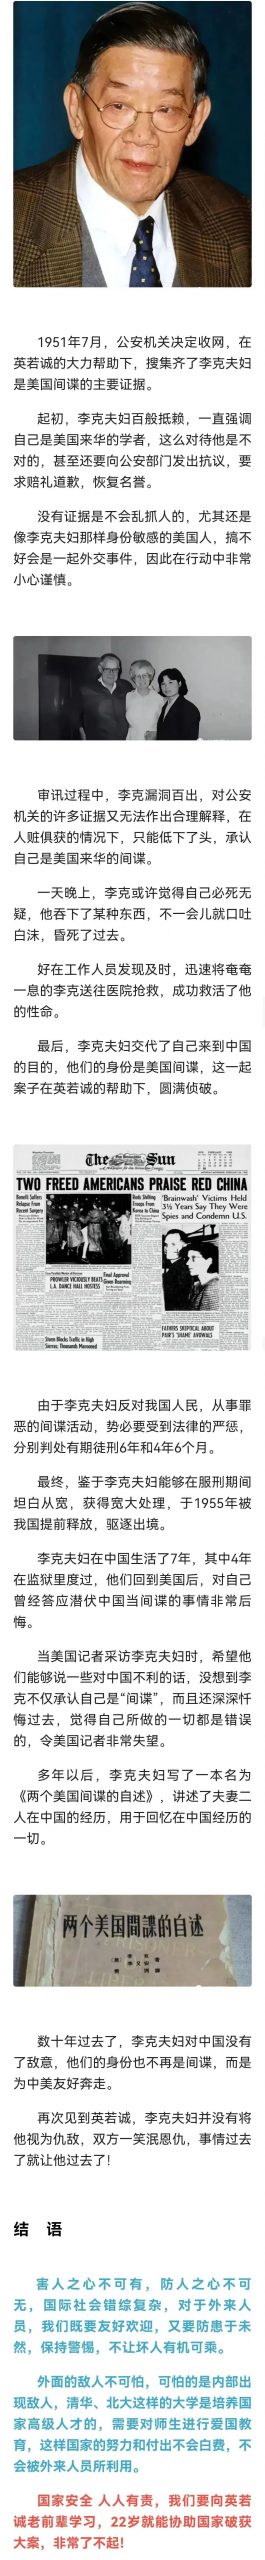 清华大学老师是海军间谍，在中国潜伏多年，被著名影星英若诚揪出